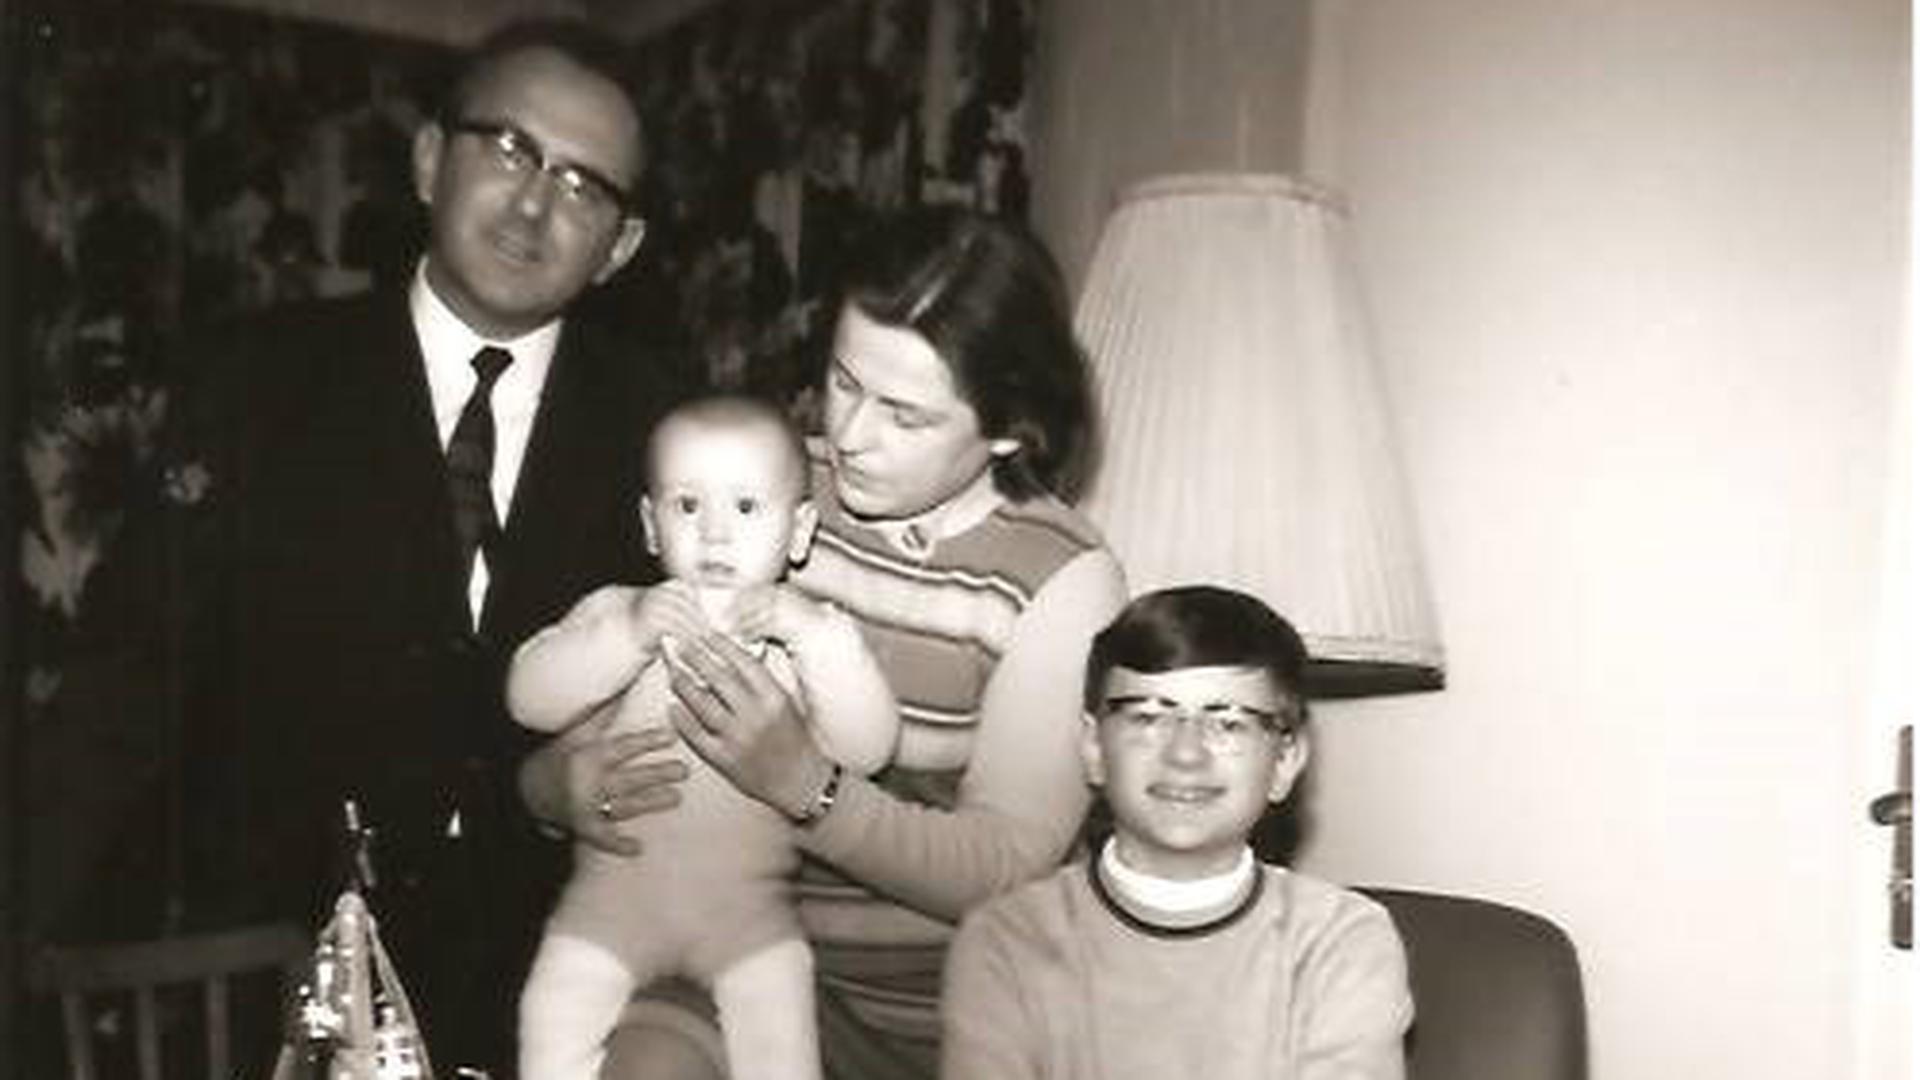  Am 2. Advent 1969 posieren die Eltern Rudi und Gerda sowie die beiden Söhne Rolf-Ulrich und Heinz Rudolf (rechts) für die Kamera.